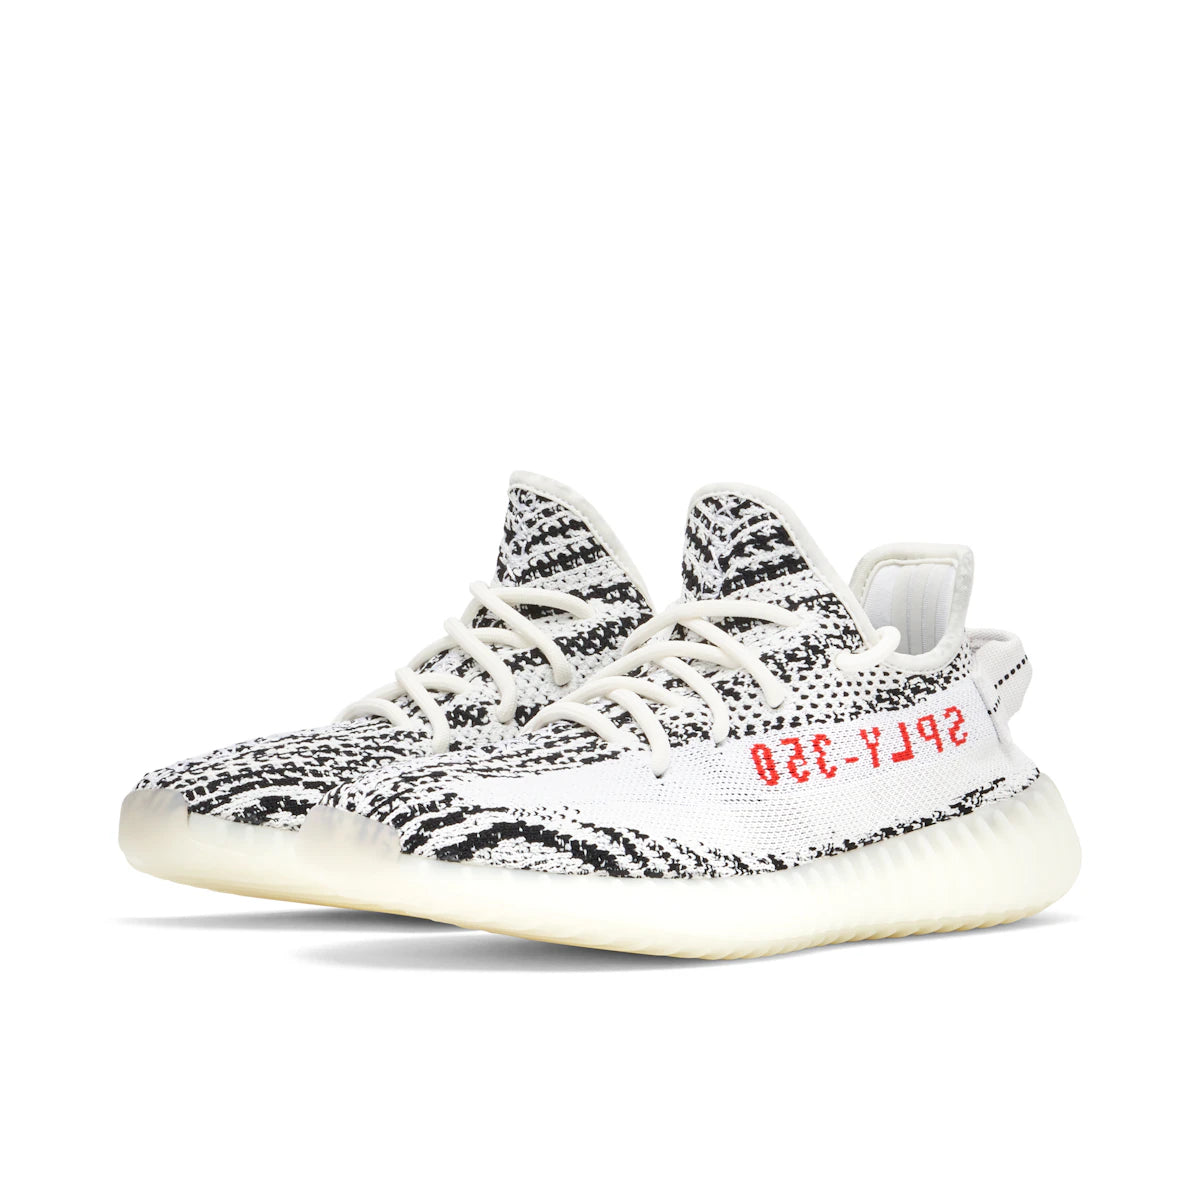 Adidas Yeezy Boost 350 V2 Zebra